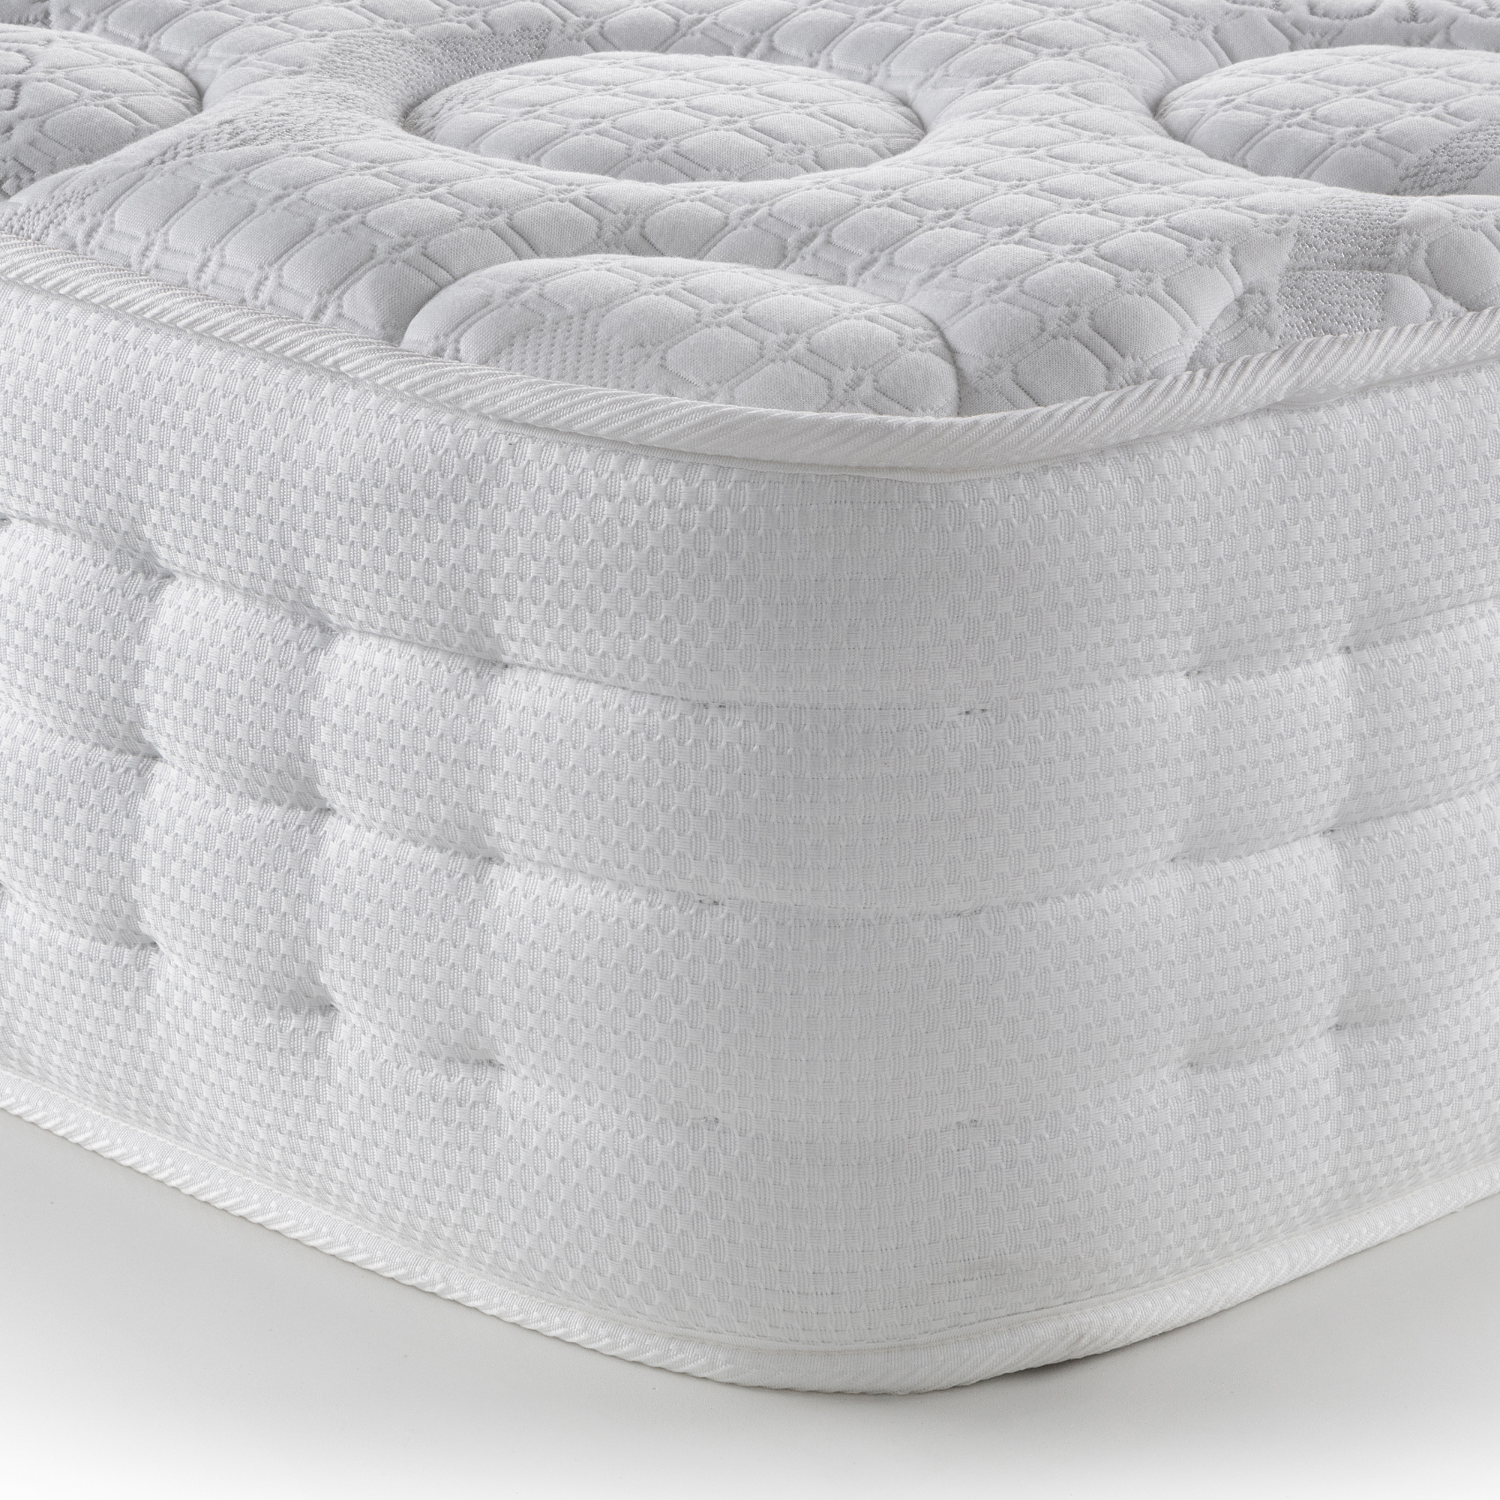 Julian bowen capsule cooling gel pocket sprung mattress - king size